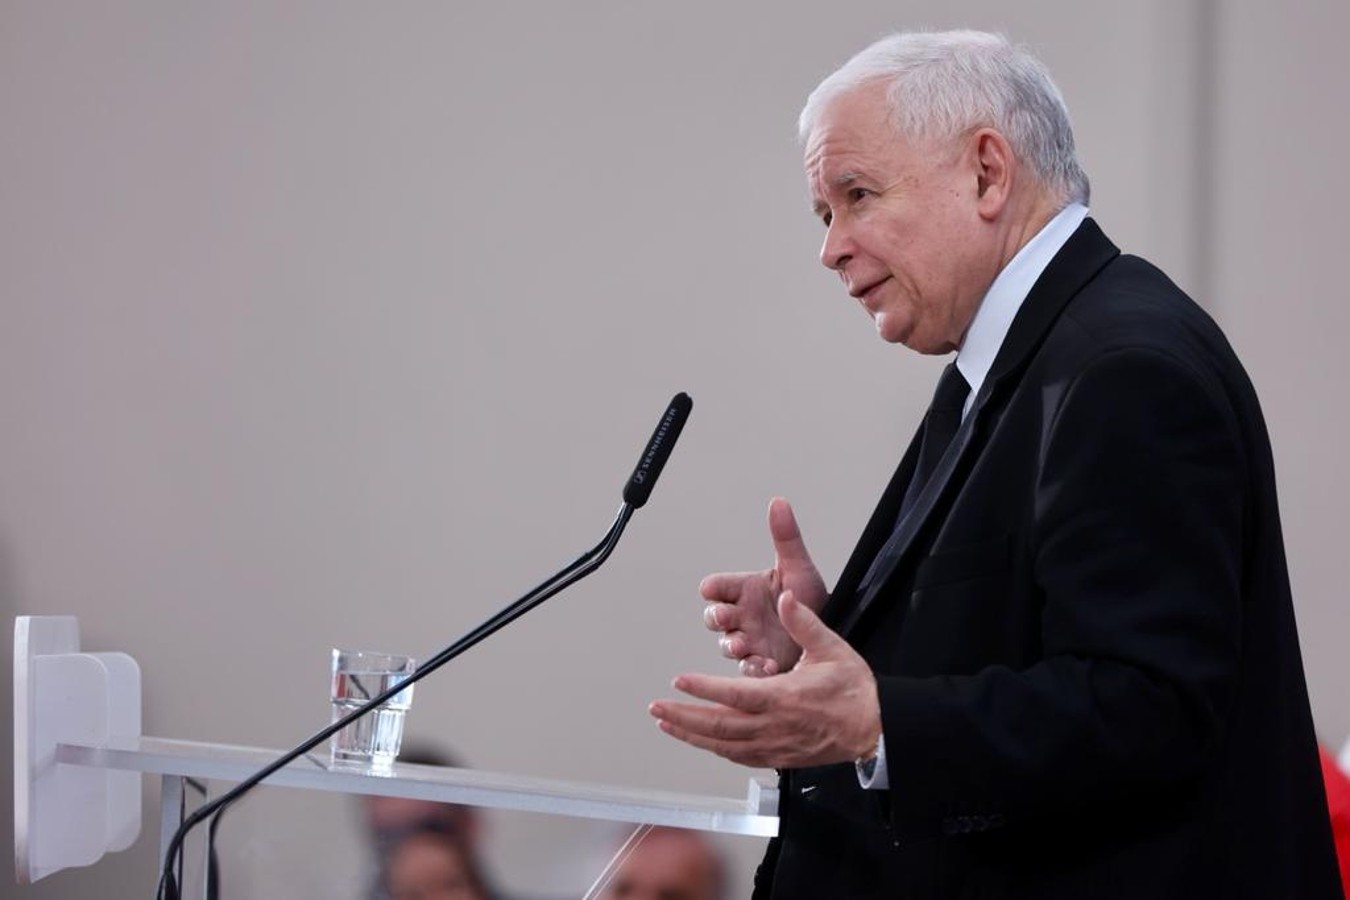 Podwyżki dla nauczycieli według Kaczyńskiego: “Jak rzucimy nowe pieniądze teraz, inflacja pójdzie w górę”